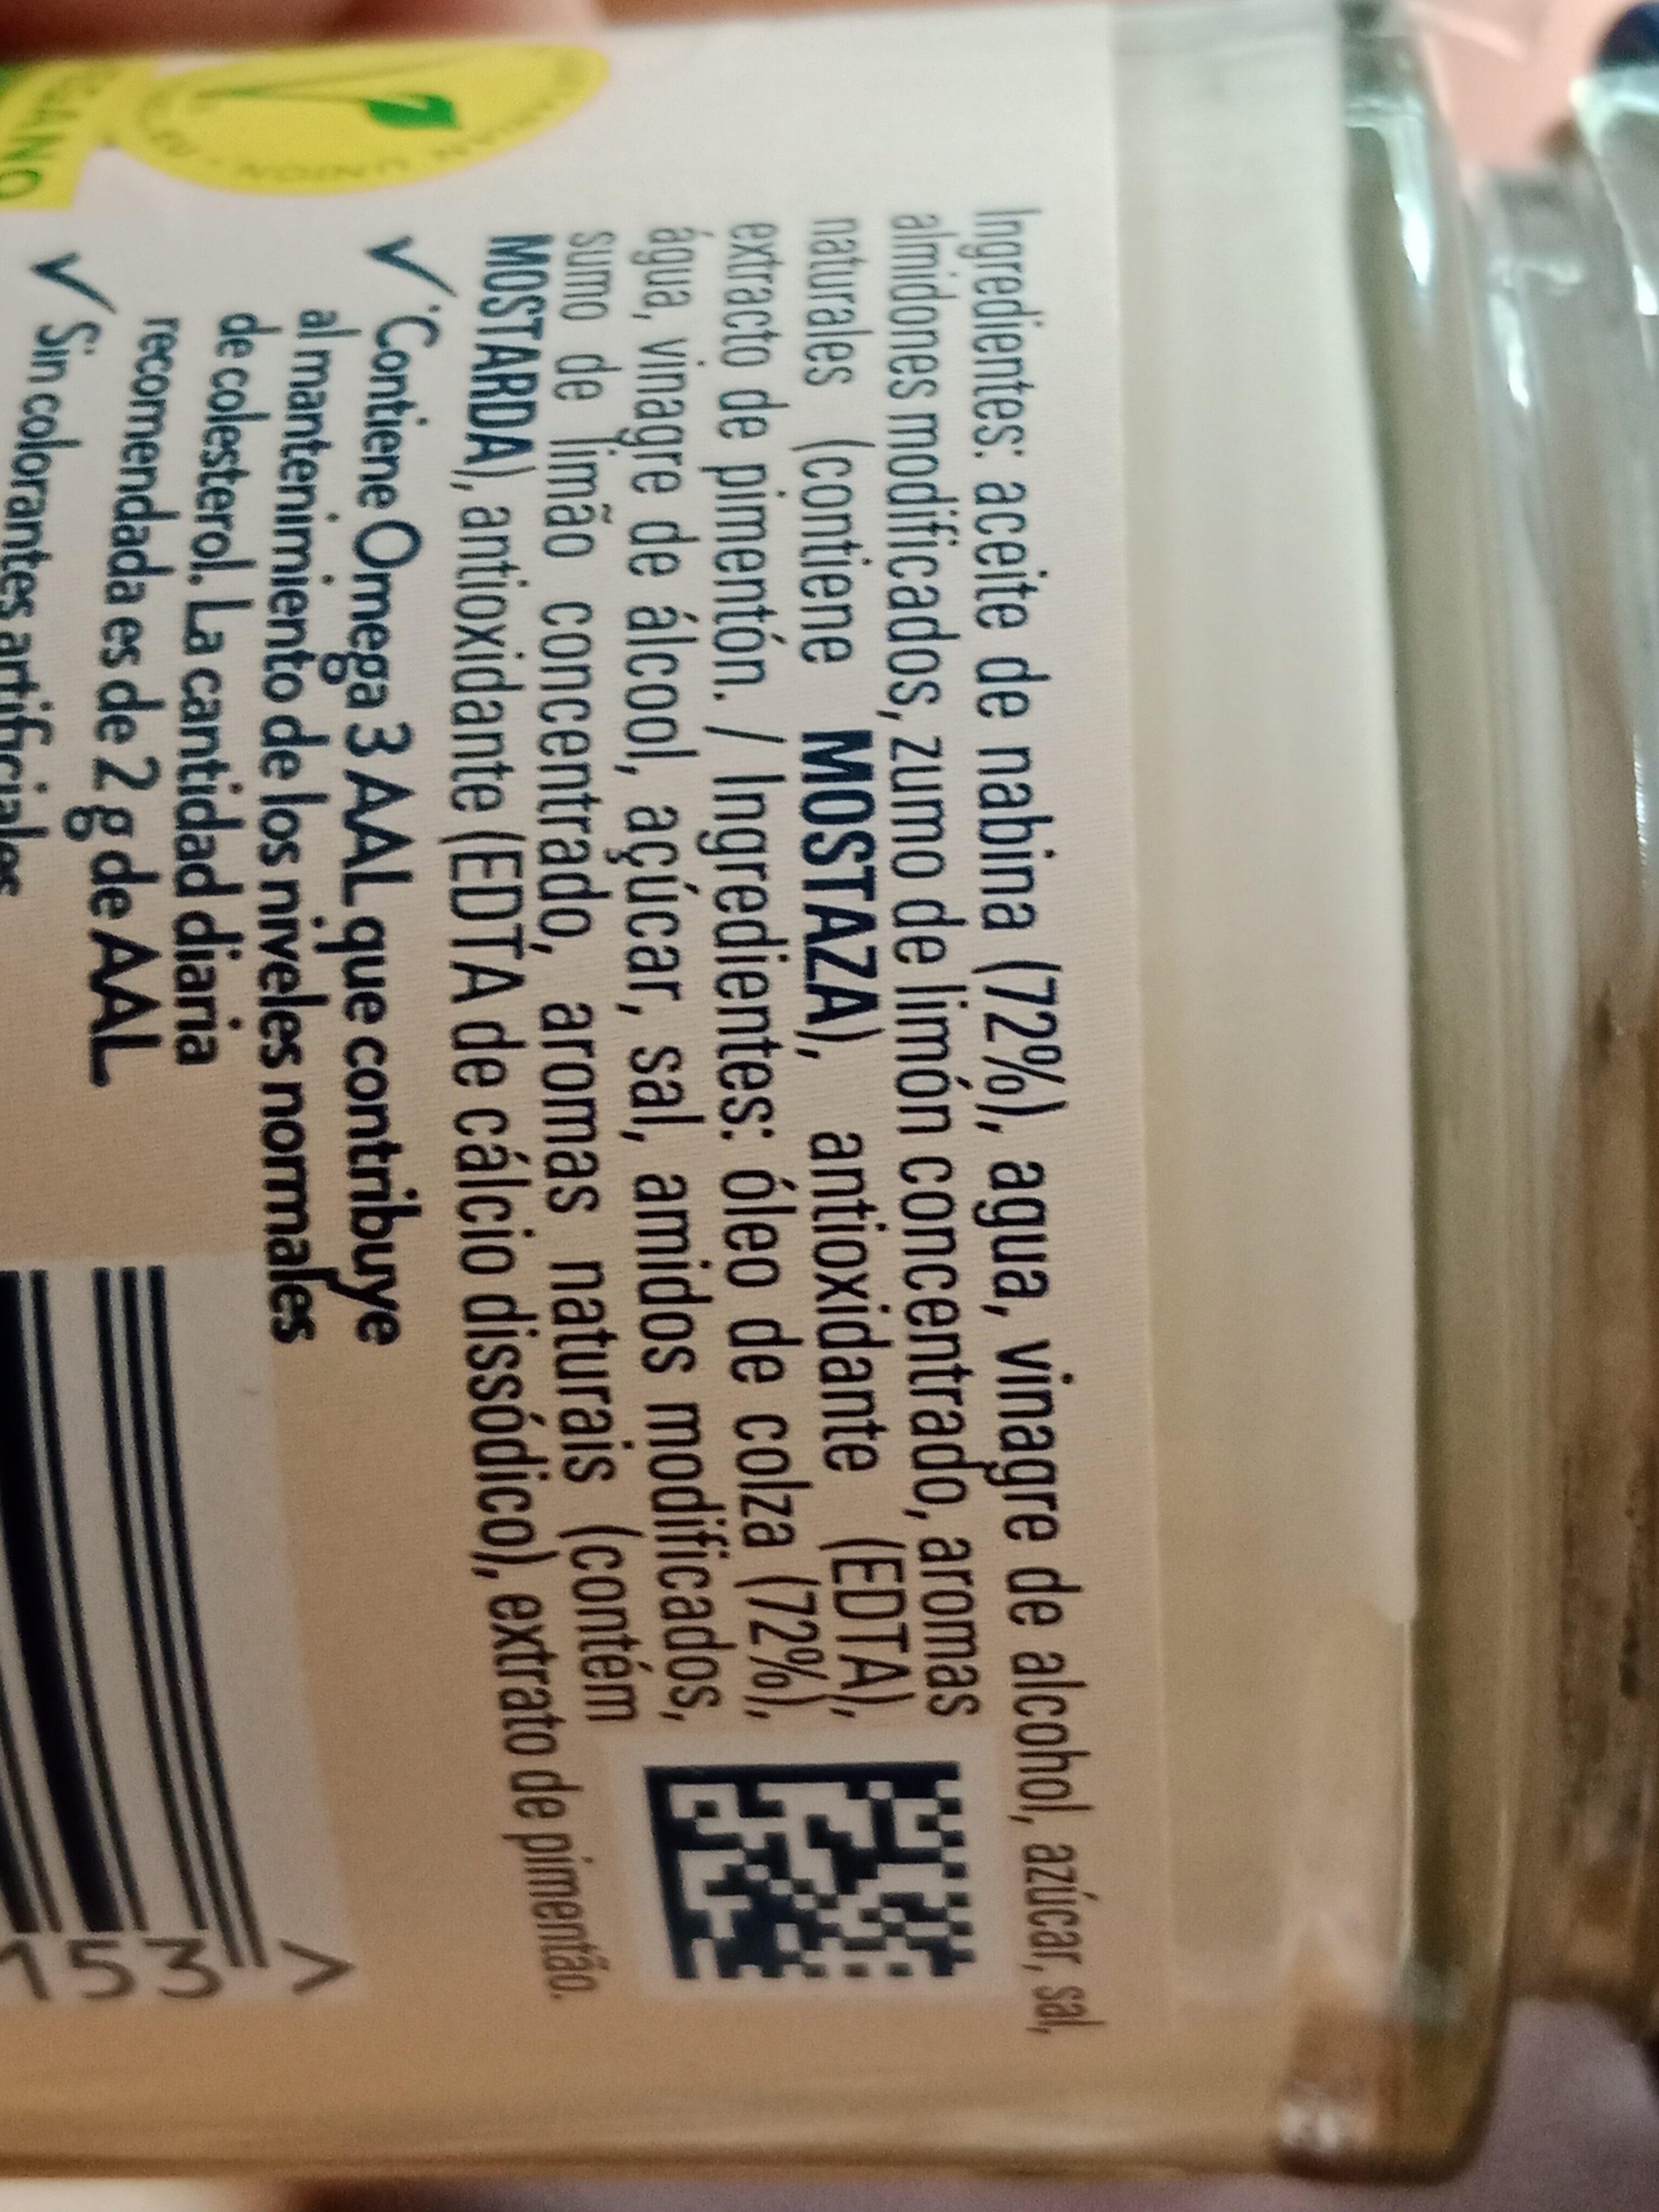 Vegan mayo - Ingredients